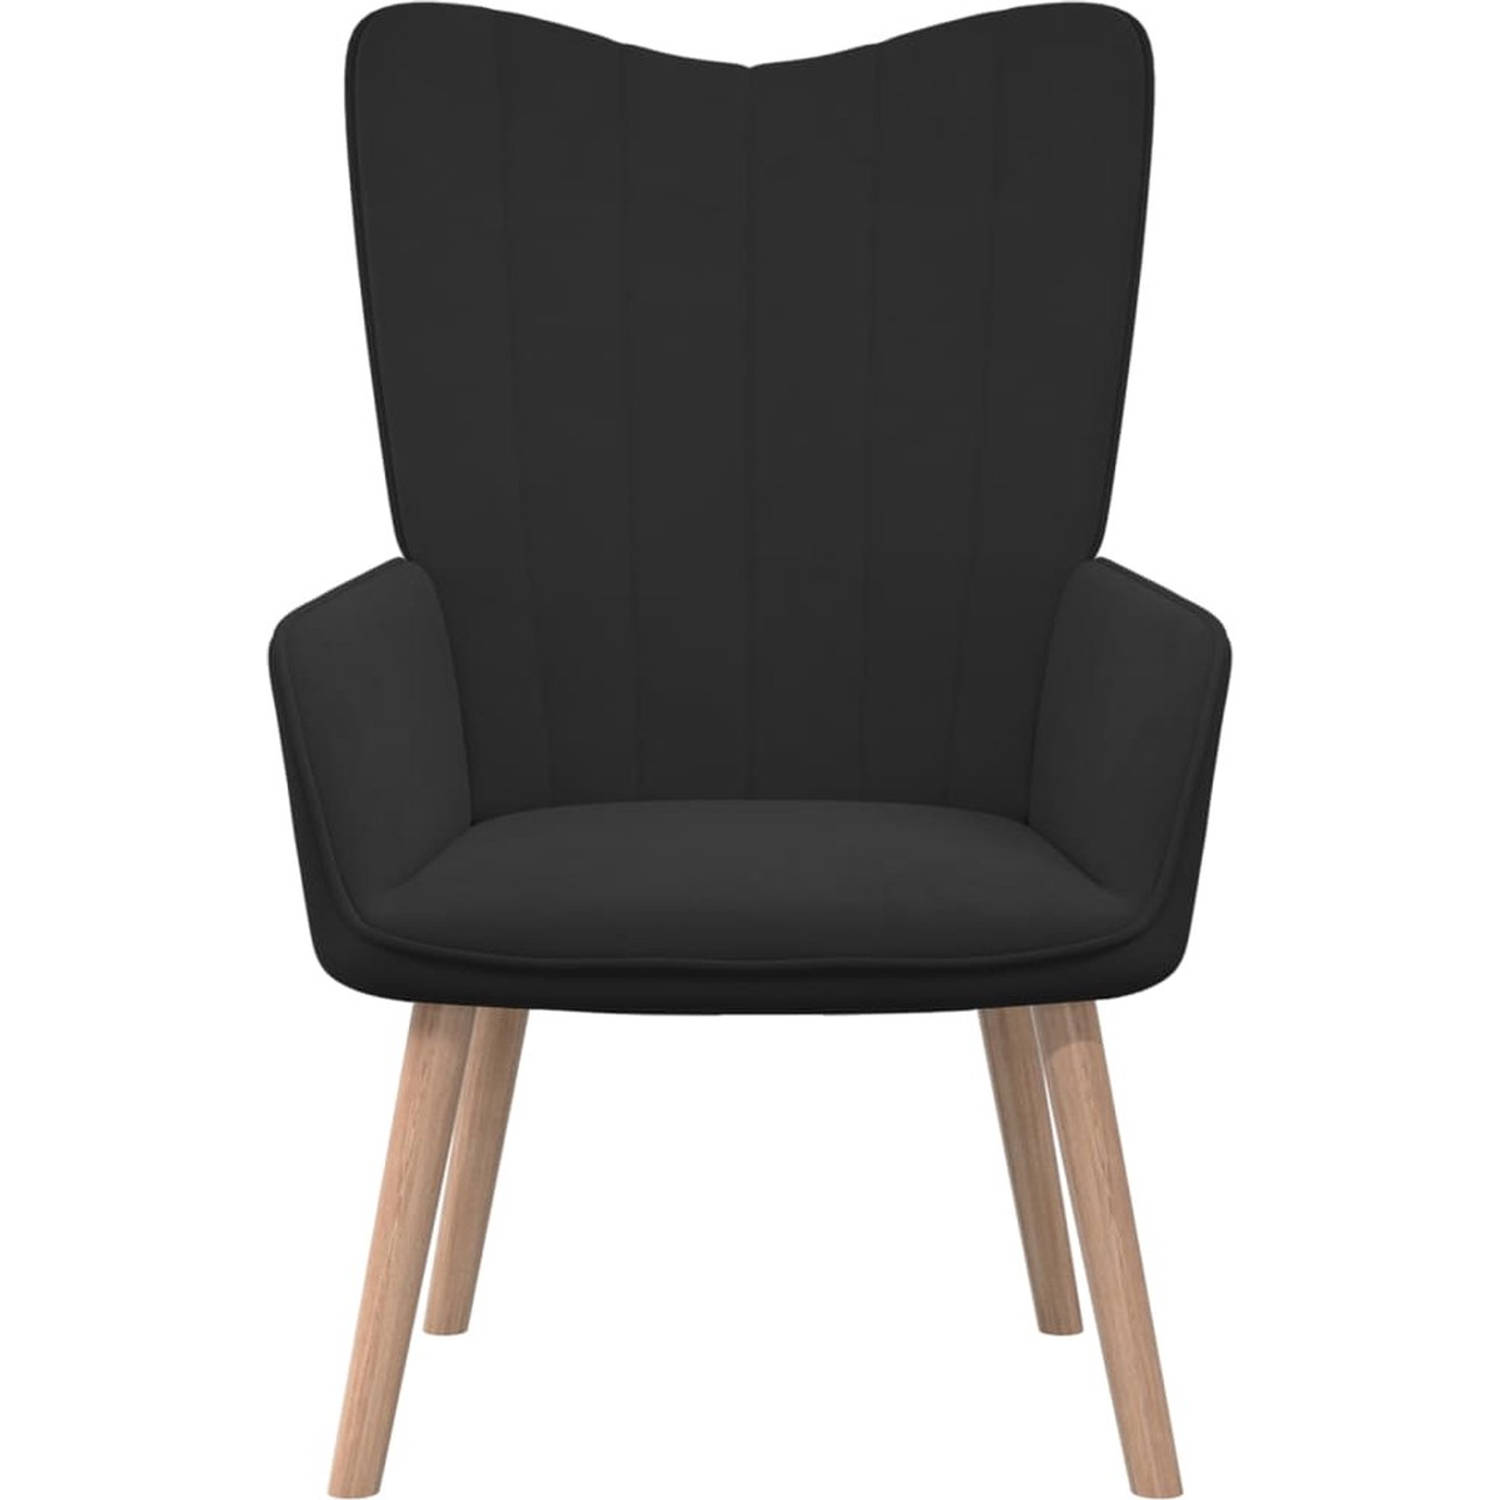 The Living Store Relaxstoel - zwart fluweel - 61.5 x 69 x 95.5 cm - stabiel en duurzaam